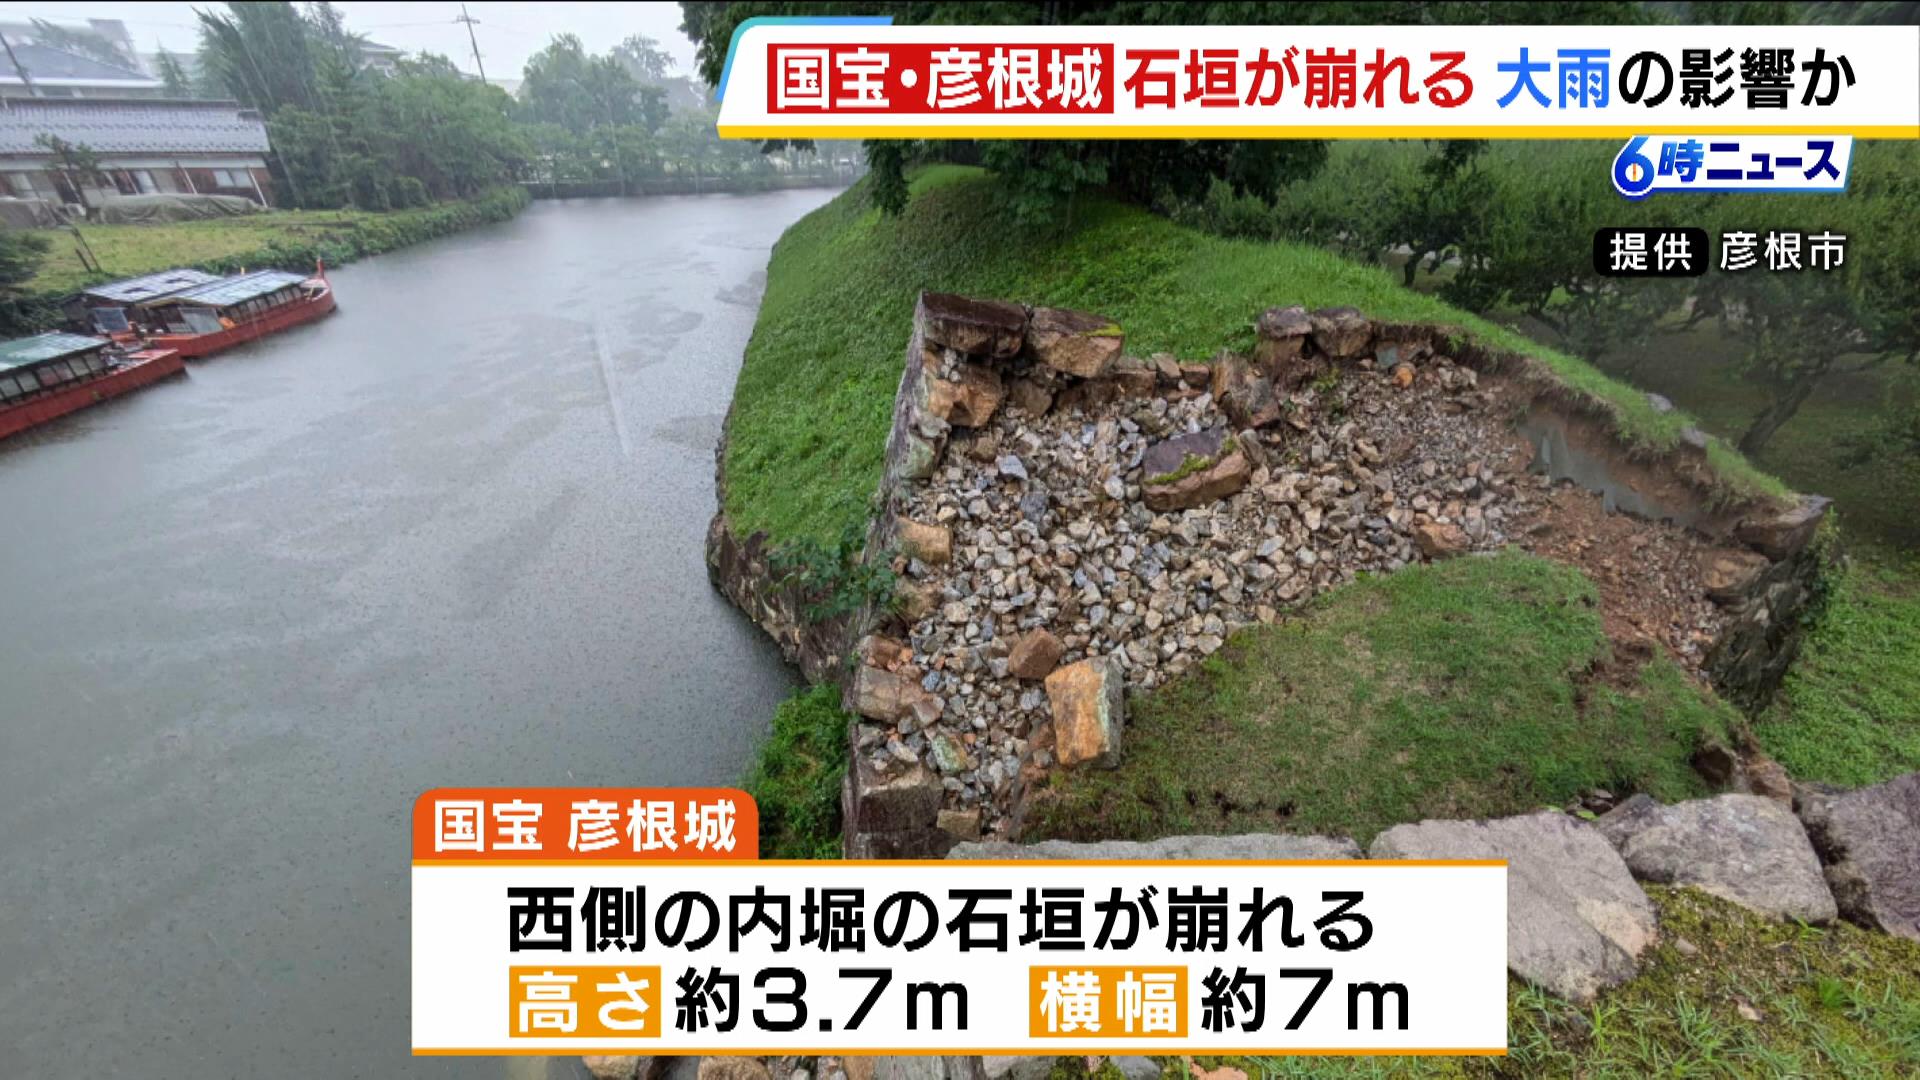 国宝・彦根城の『石垣』の一部が崩落…通行止めだったためけが人なし　今月の大雨の影響か